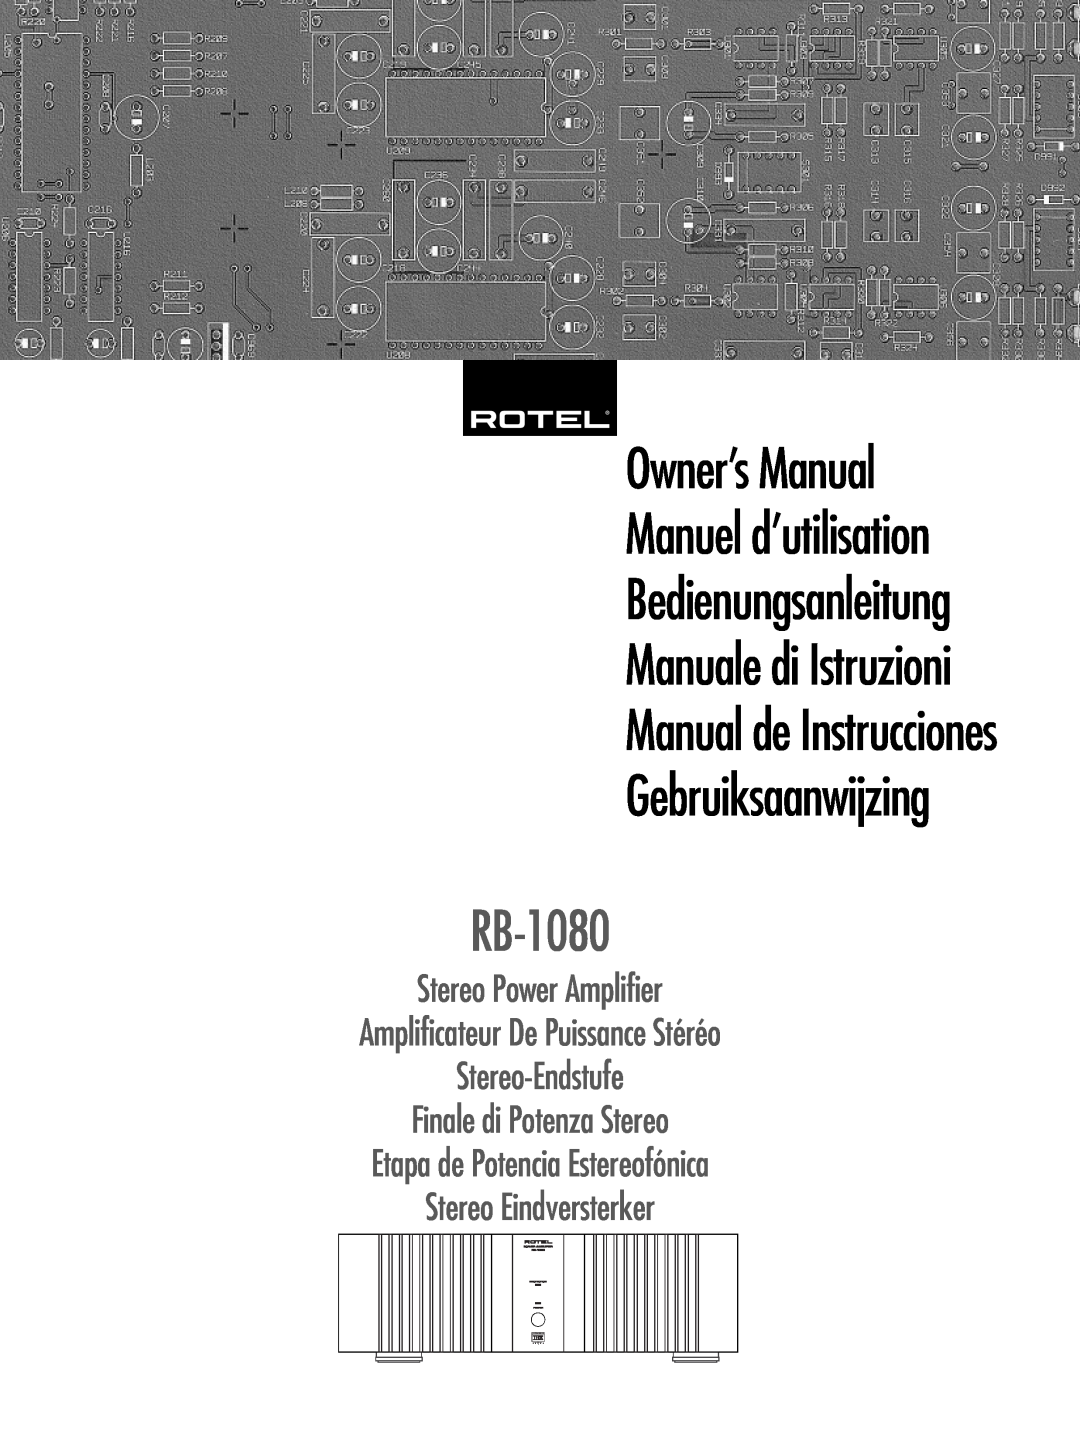 Rotel RMB-1080 owner manual Manual de Instrucciones, RB-1080, Gebruiksaanwijzing, Manuale di Istruzioni 